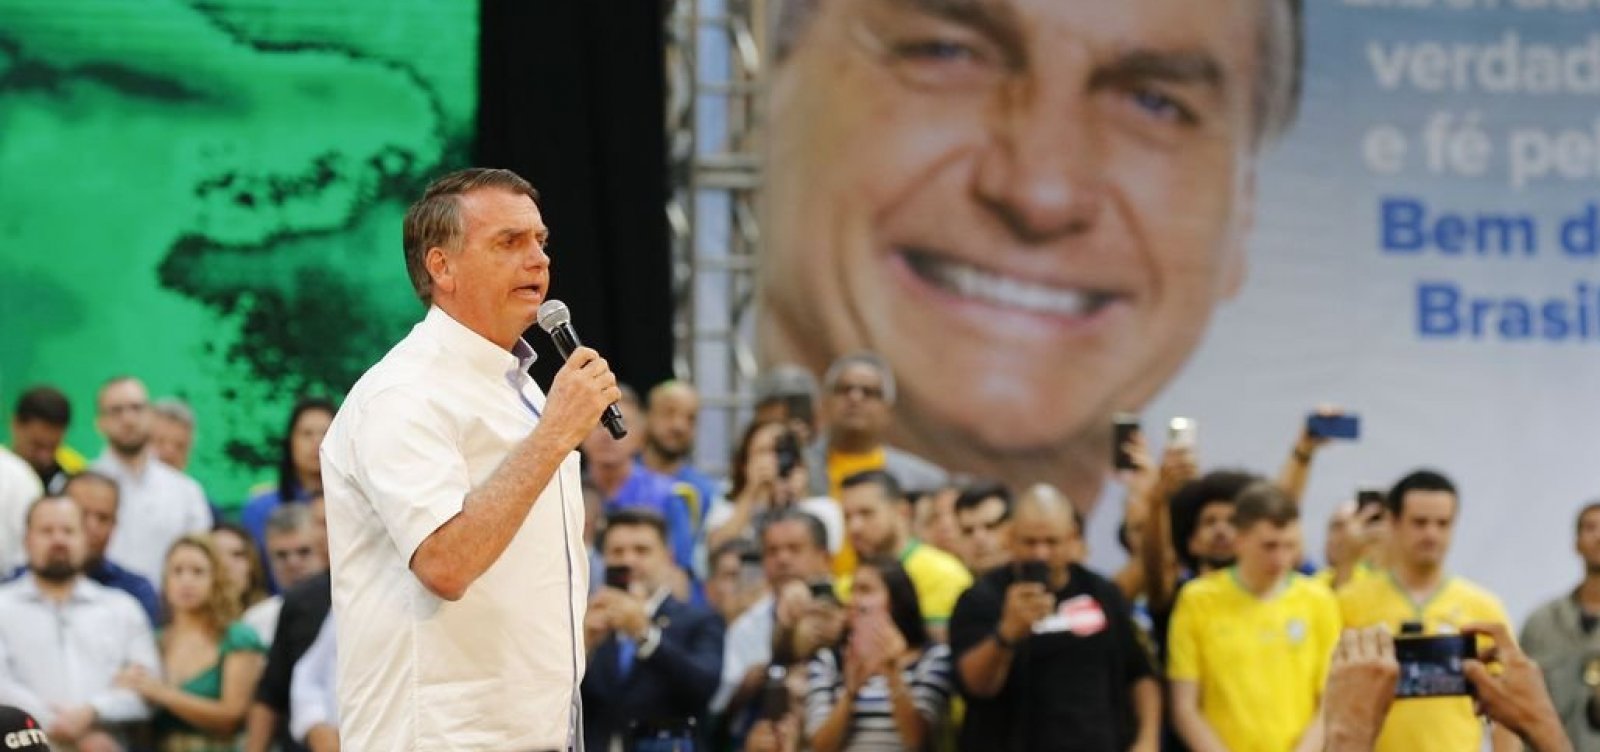 PT aciona TSE contra Bolsonaro e PL por irregularidades em convenção